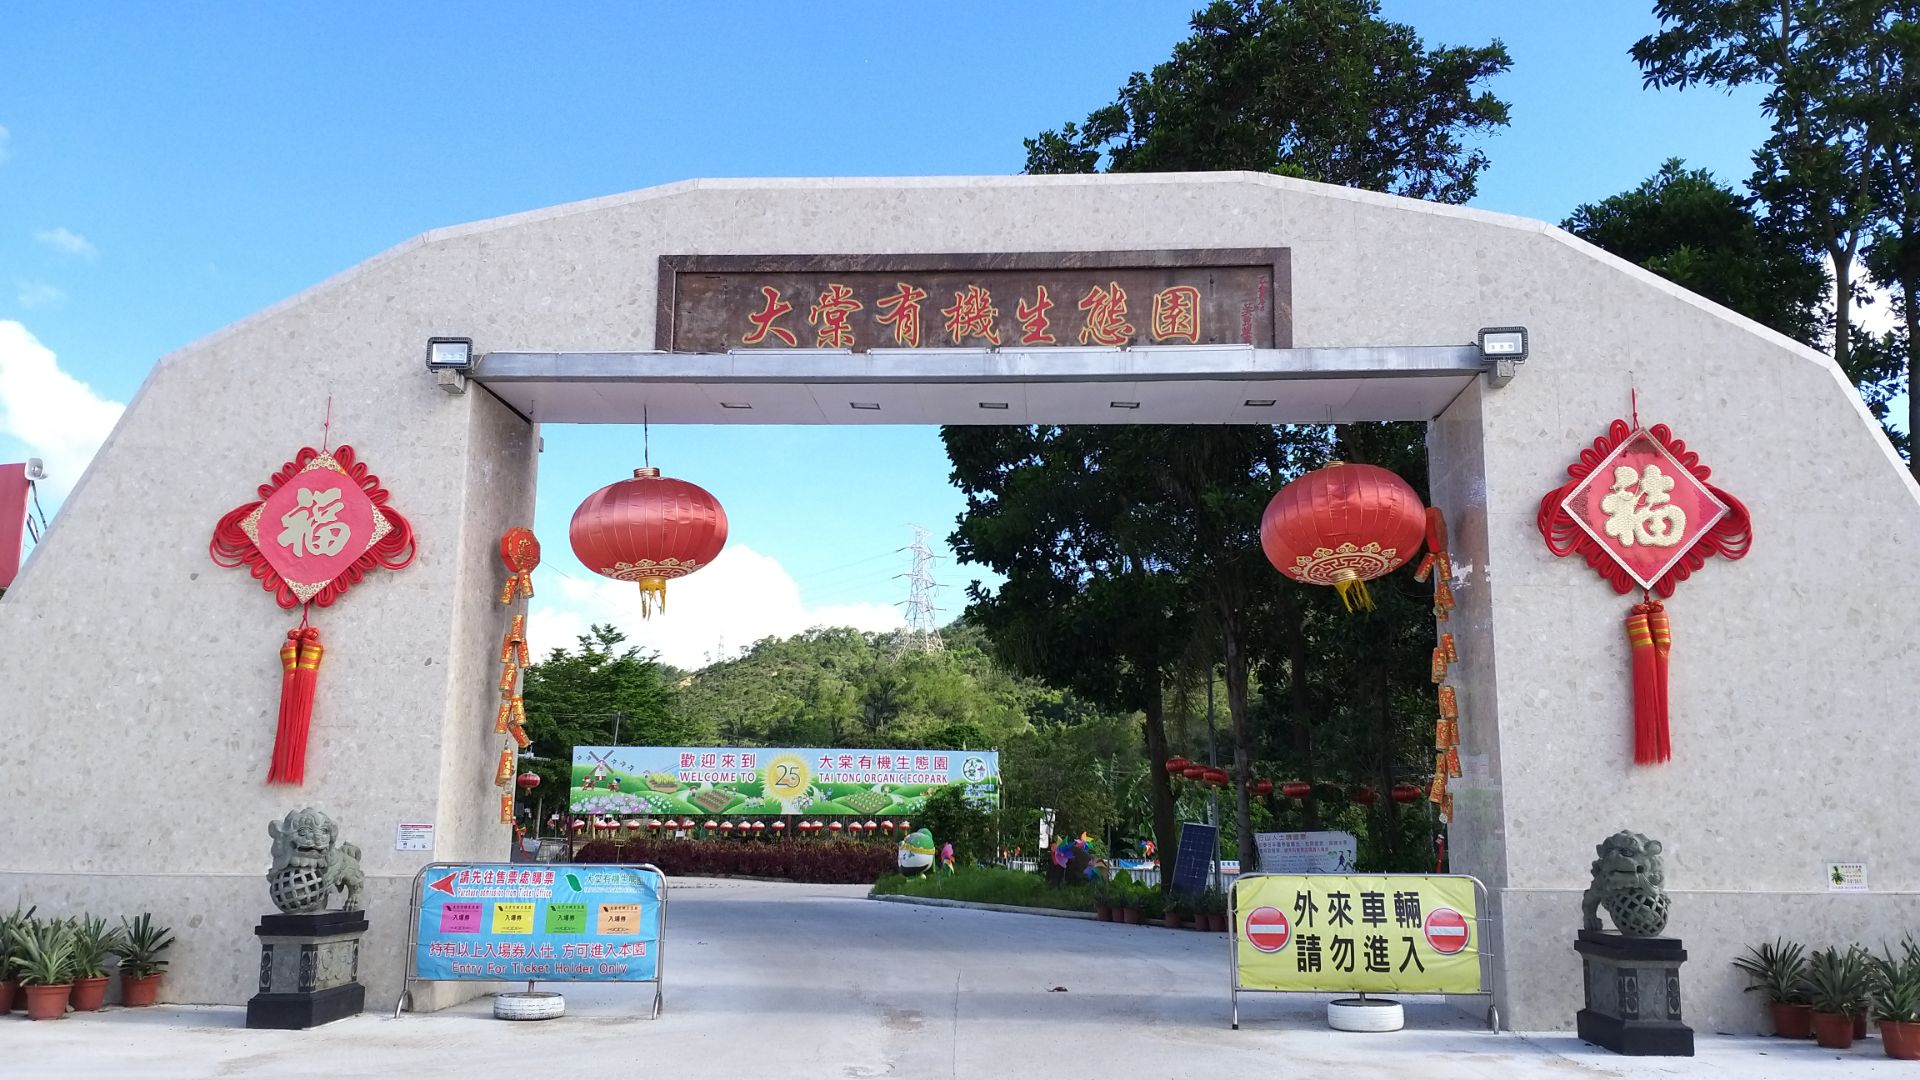 大棠有机生態园，位於香港新界元朗之大棠谷內，当中充滿了自然生態氣息，而內裡更設置了很多康樂設施及多个